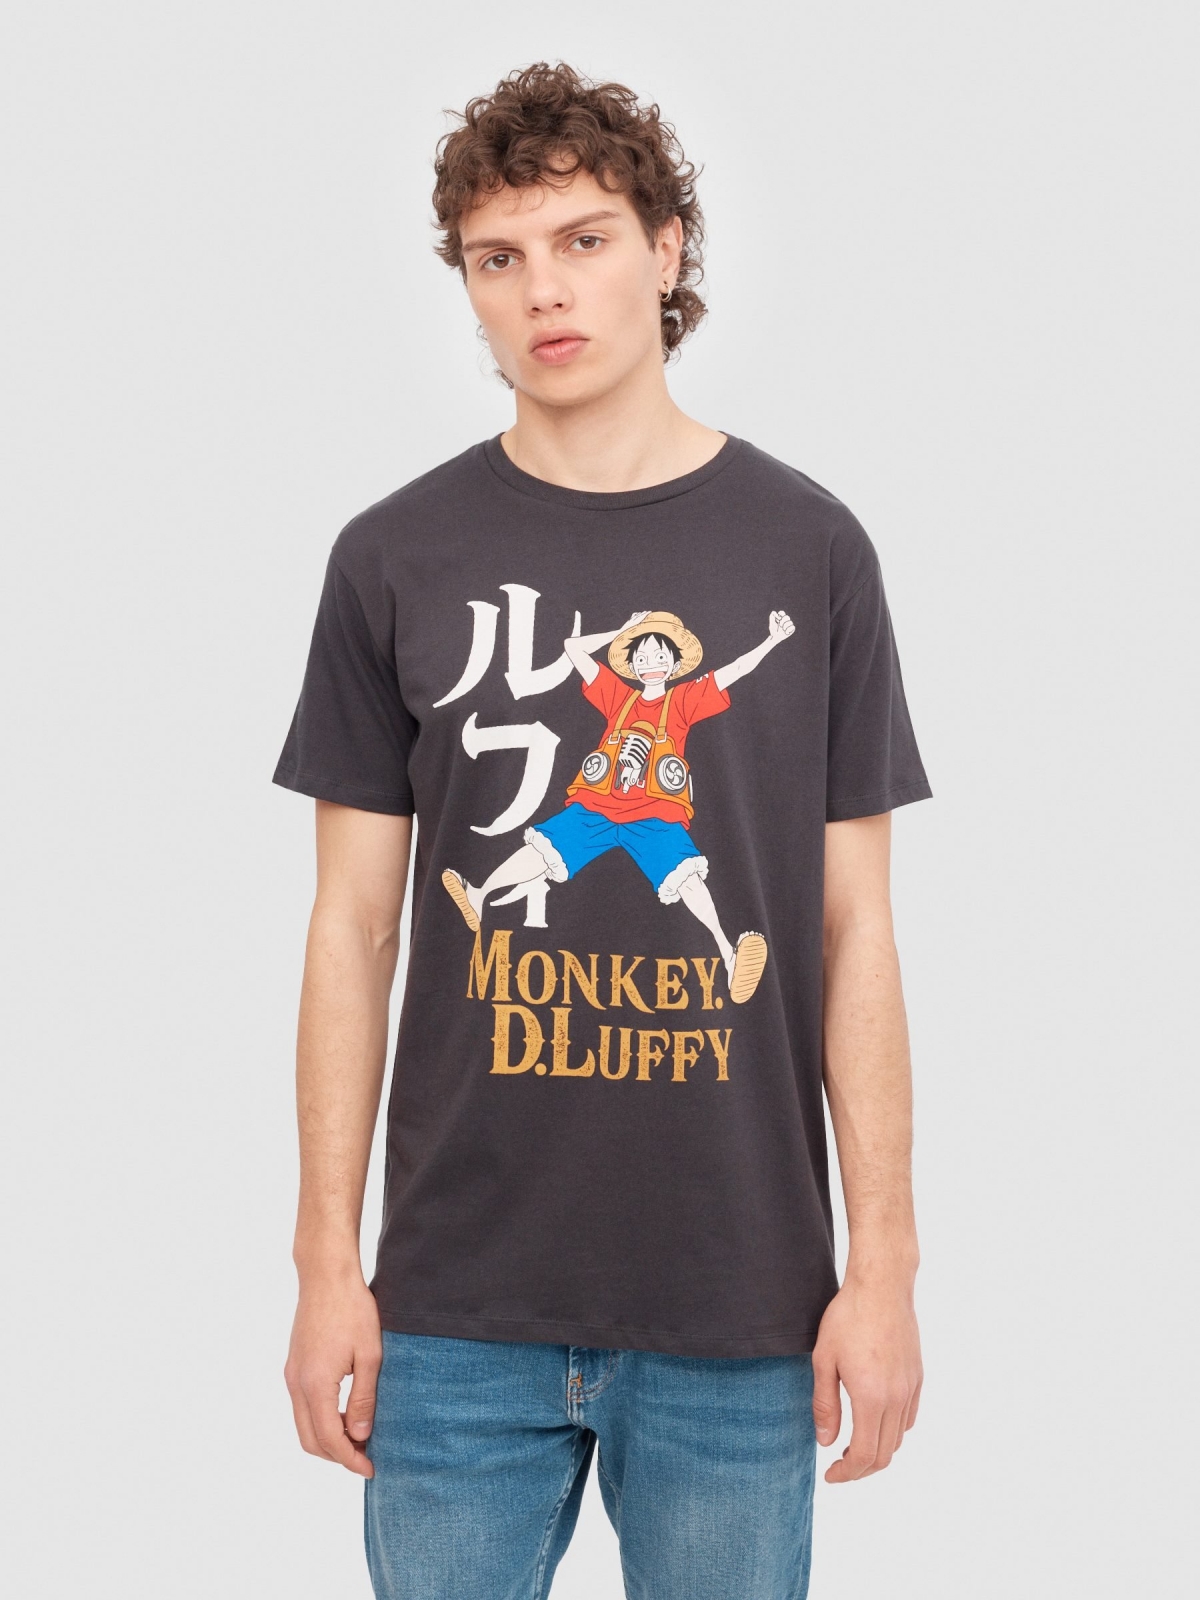 Camiseta Monkey D. Luffy gris oscuro vista media frontal